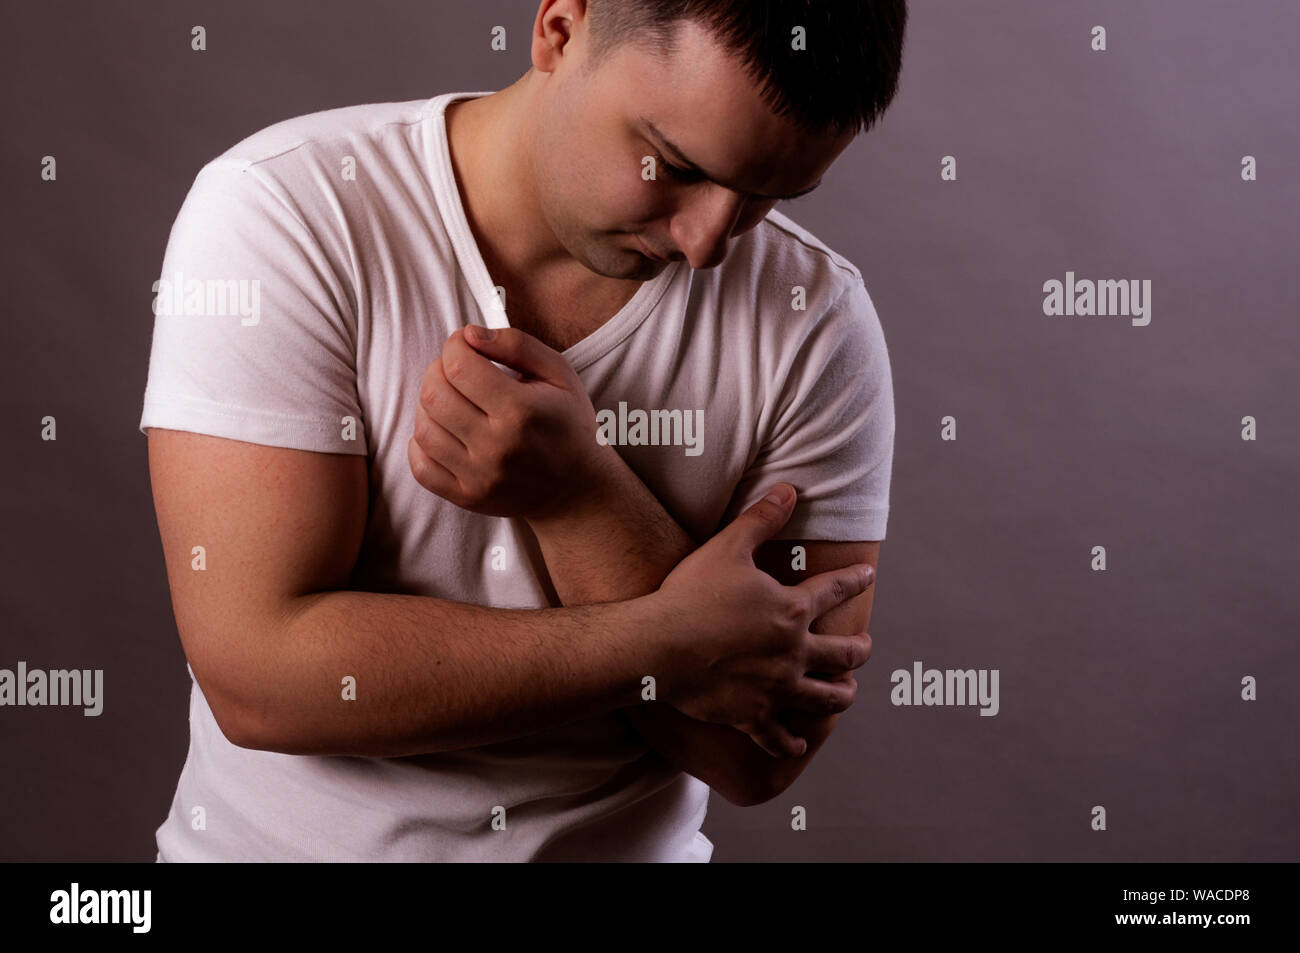 Dolor en la mano. Un hombre joven en una camiseta blanca la mano Foto de stock